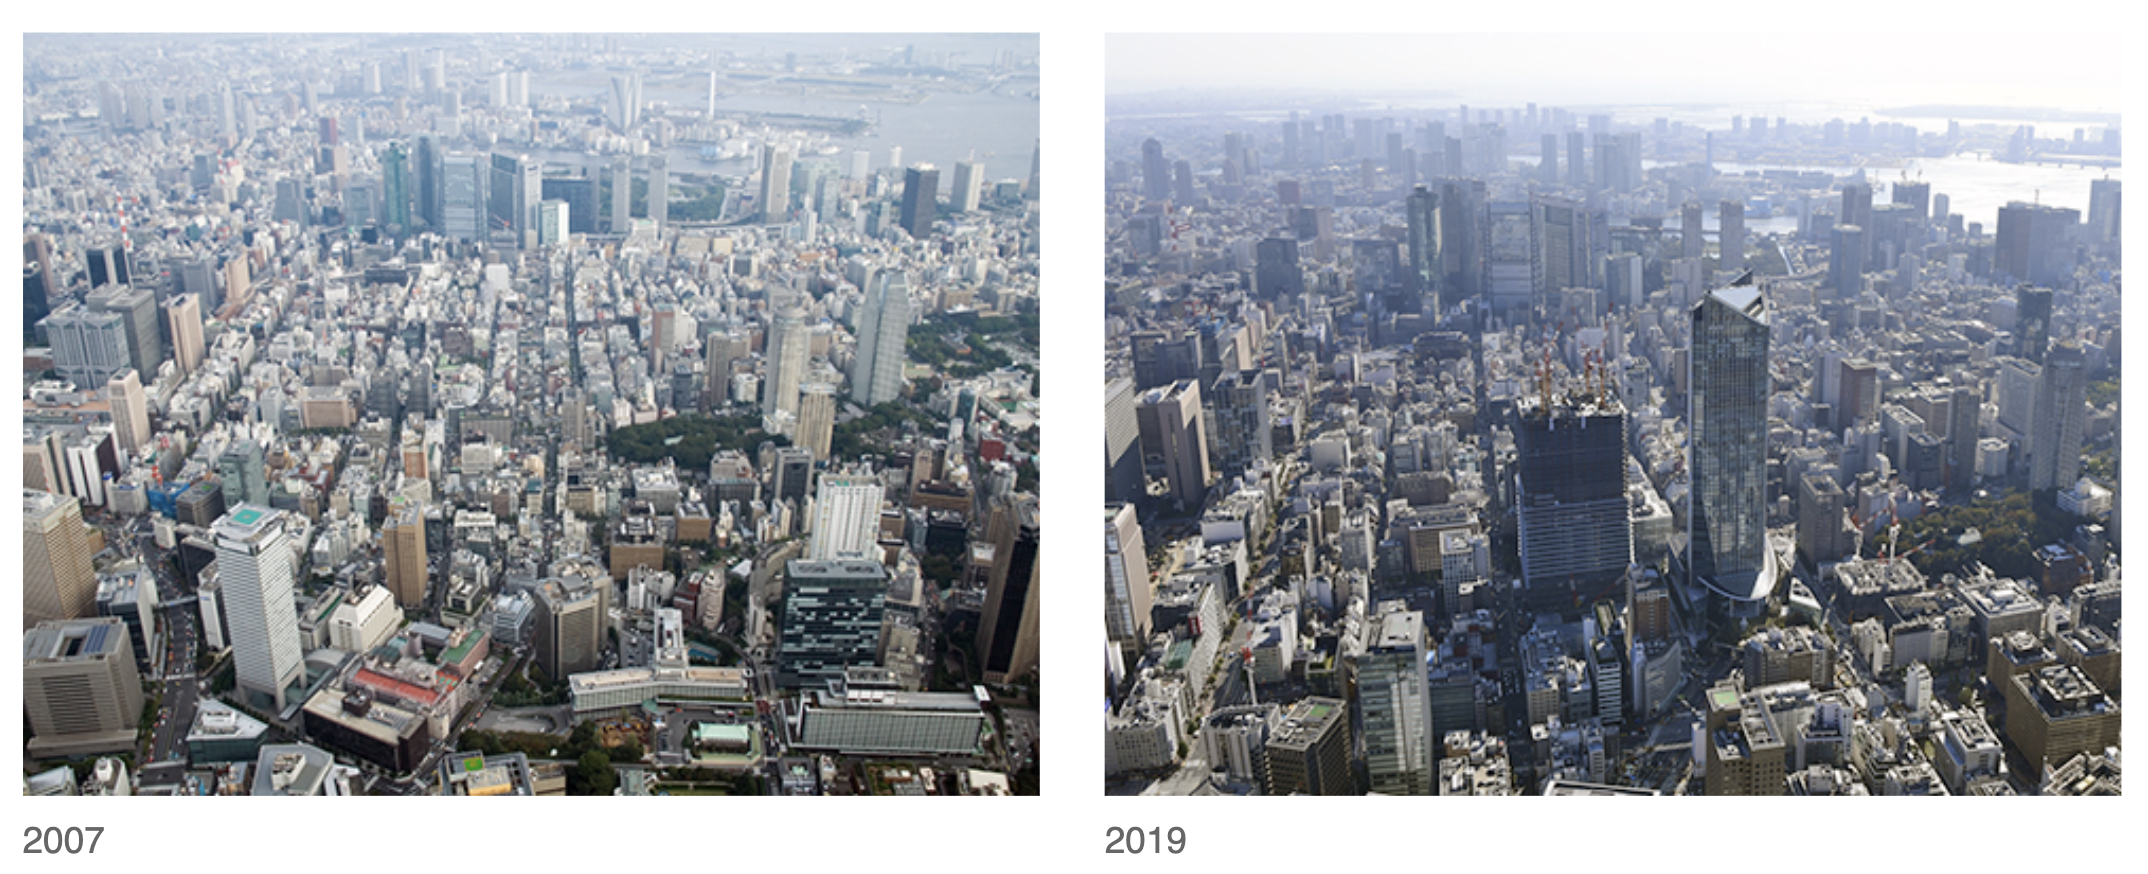 Das Tokioter Viertel Toranomon 2007 und 2019.